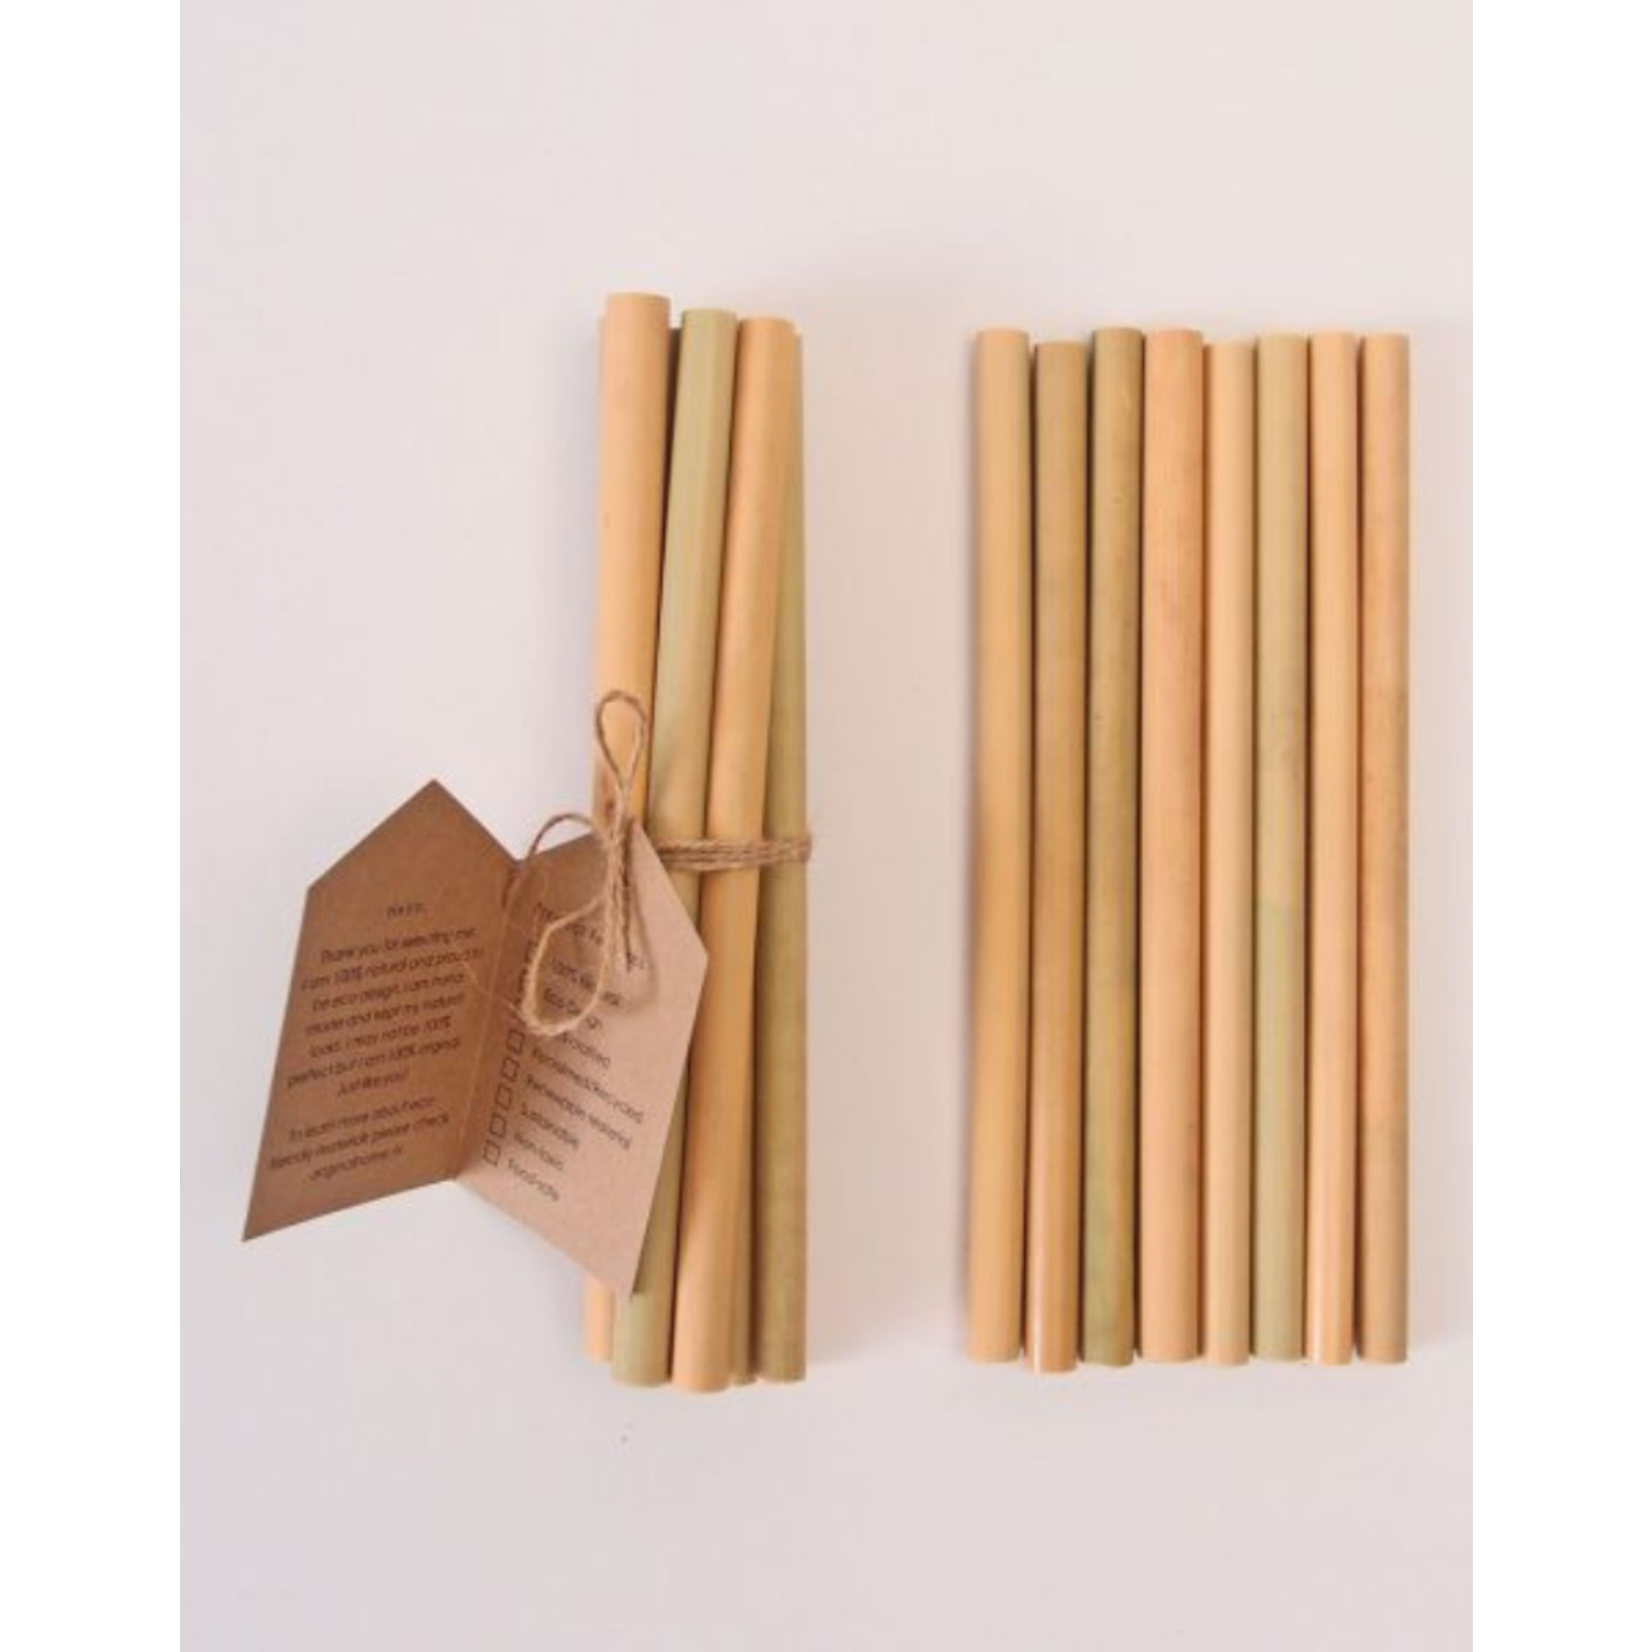 original home original home - bamboo straws - set of 9